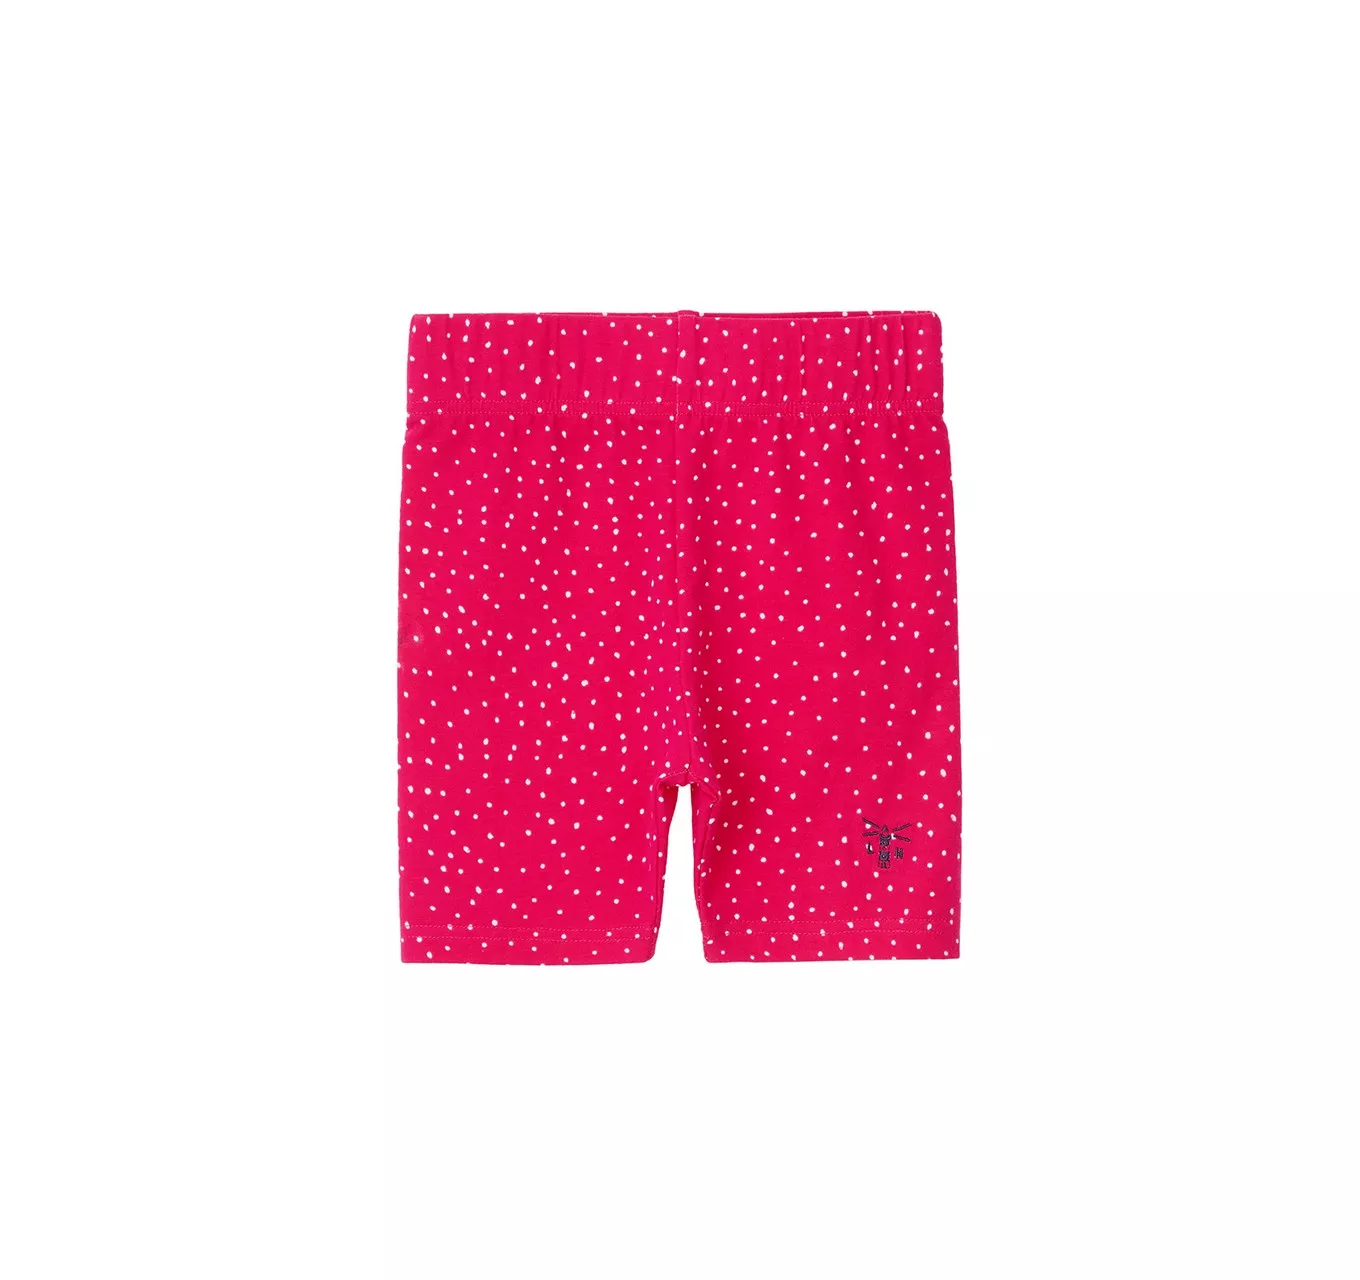 Polly Shorts Pink Dot 3-4